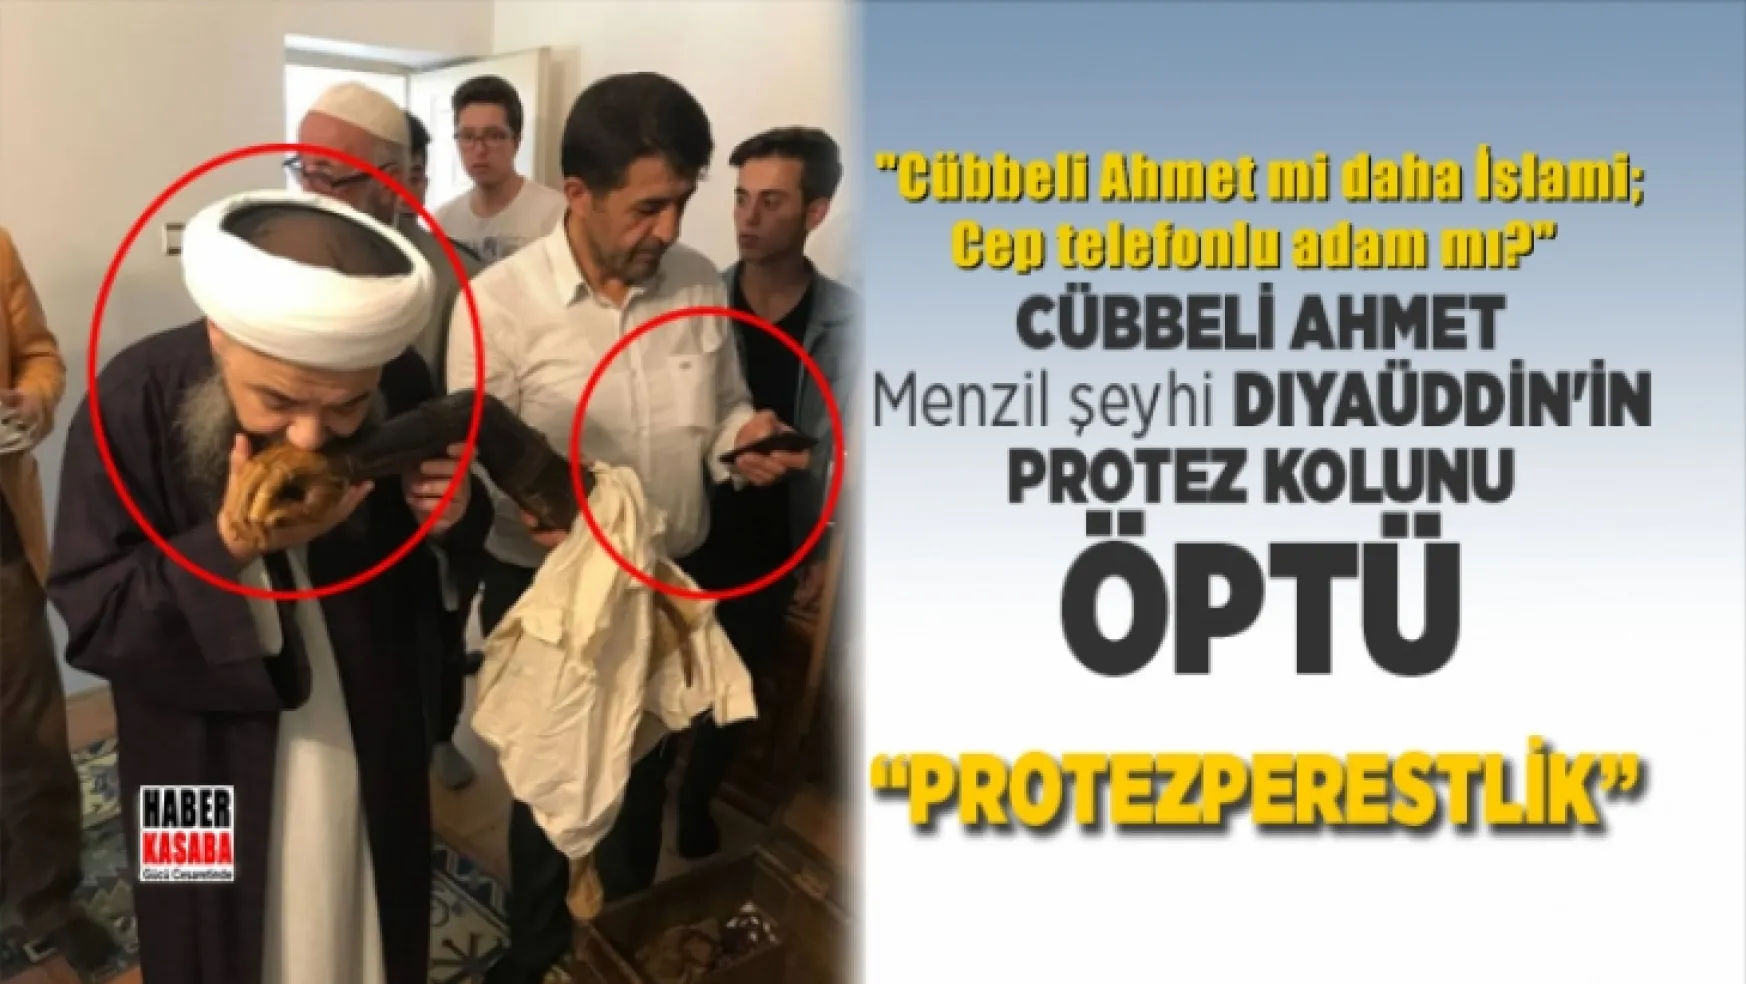 Cübbeli Ahmet Menzil şeyhi Dıyaüddin'in protez kolunu öperken!...